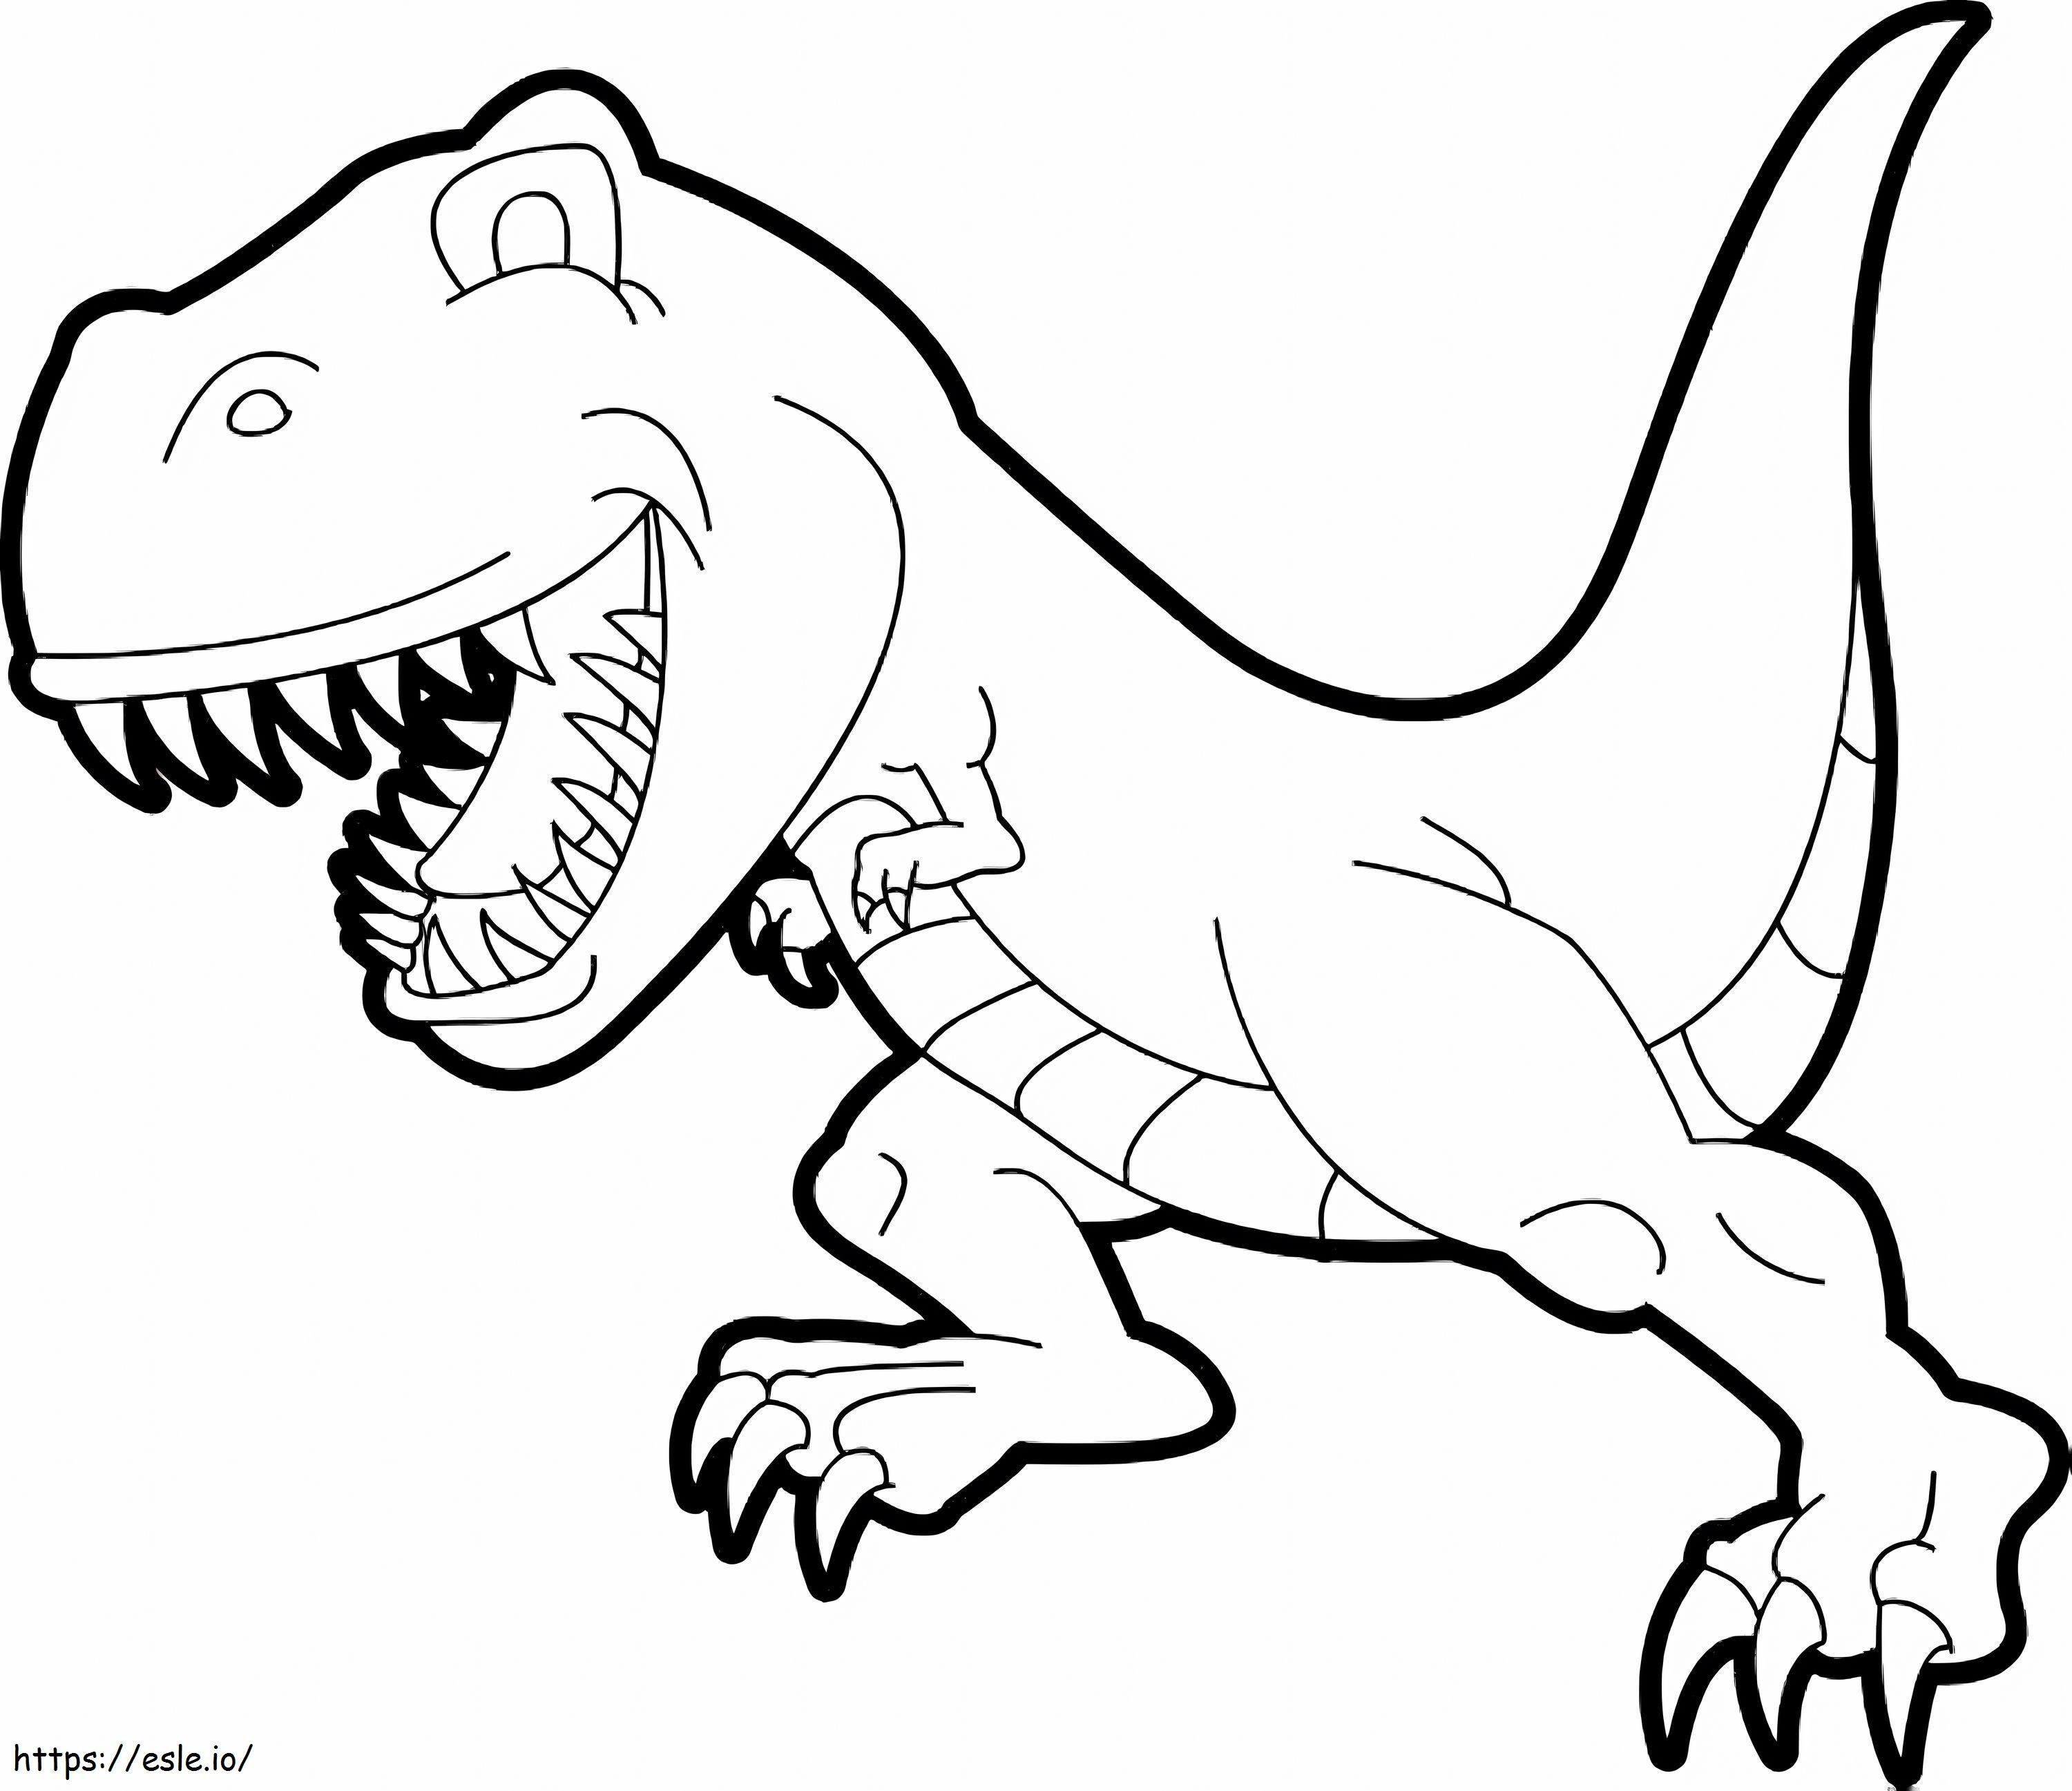 1539674613 T Rex Dibujo Inspirationa Dinosaurio Nuevo Dinosaurio Simple Best Of T Rex Dibujo para colorear